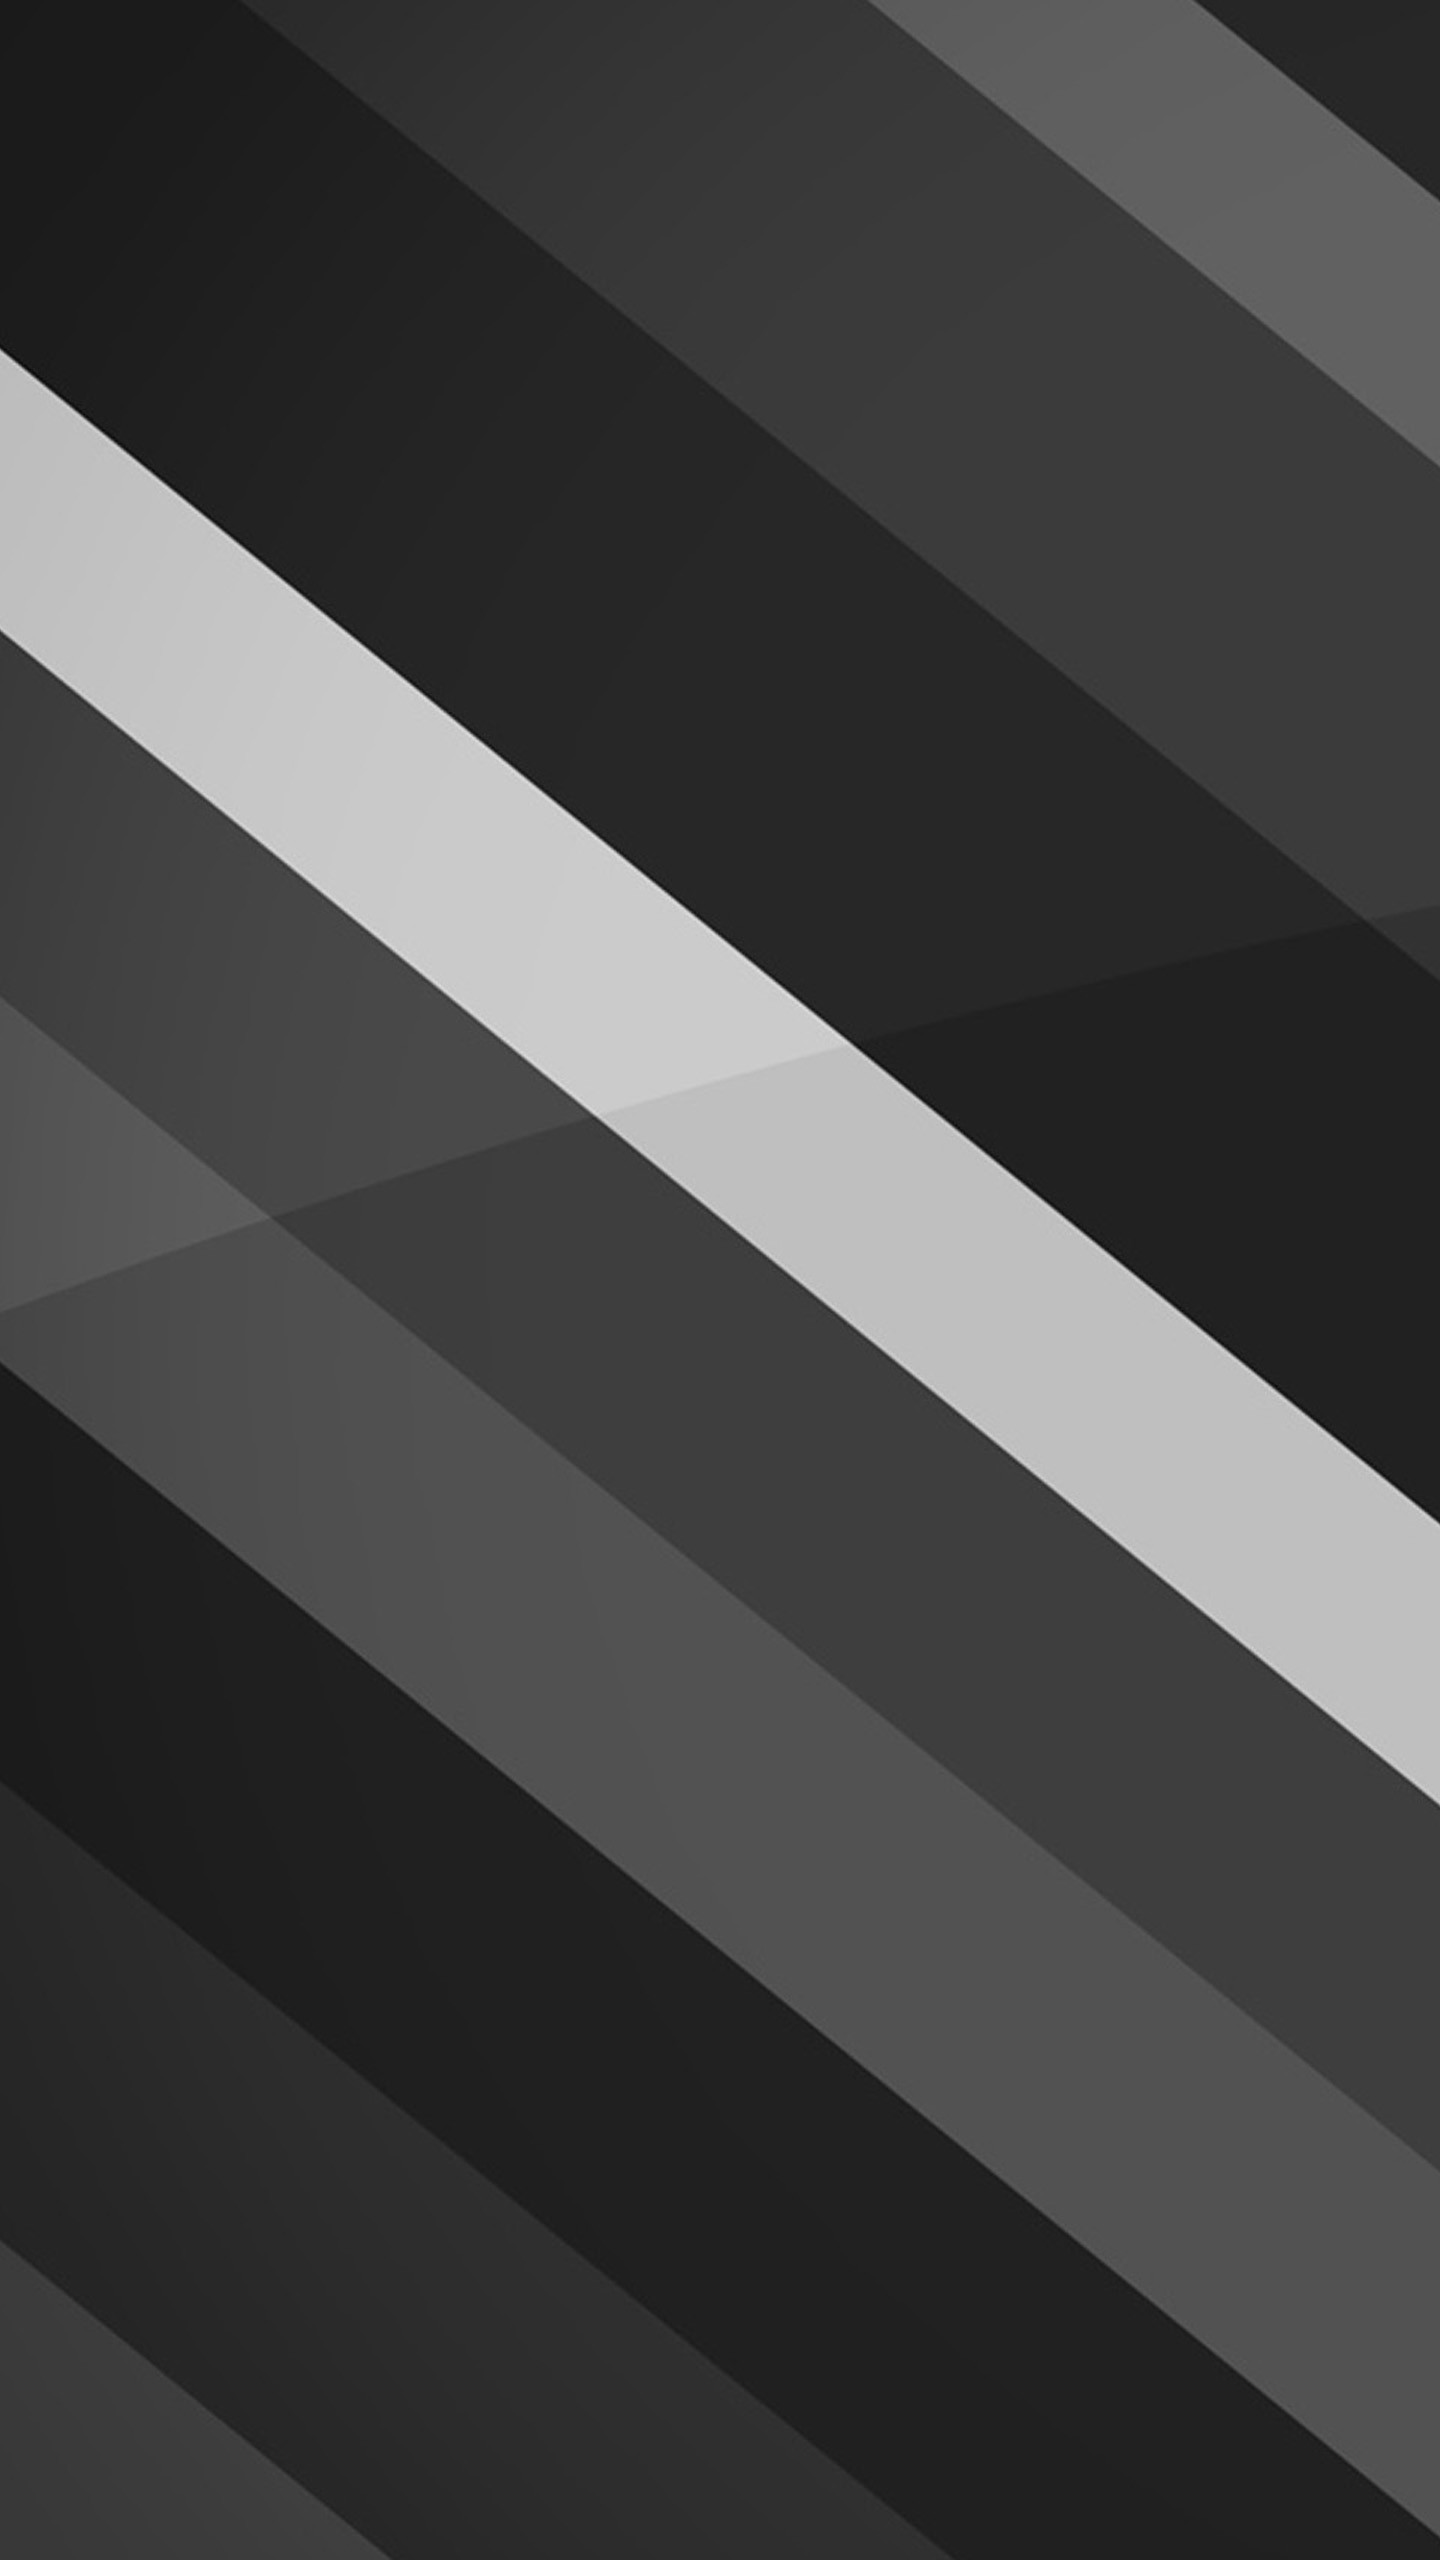 1440x2560 Rayure Black Nexus 6 Wallpapers, Nexus 6 wallpapers and Backgrounds